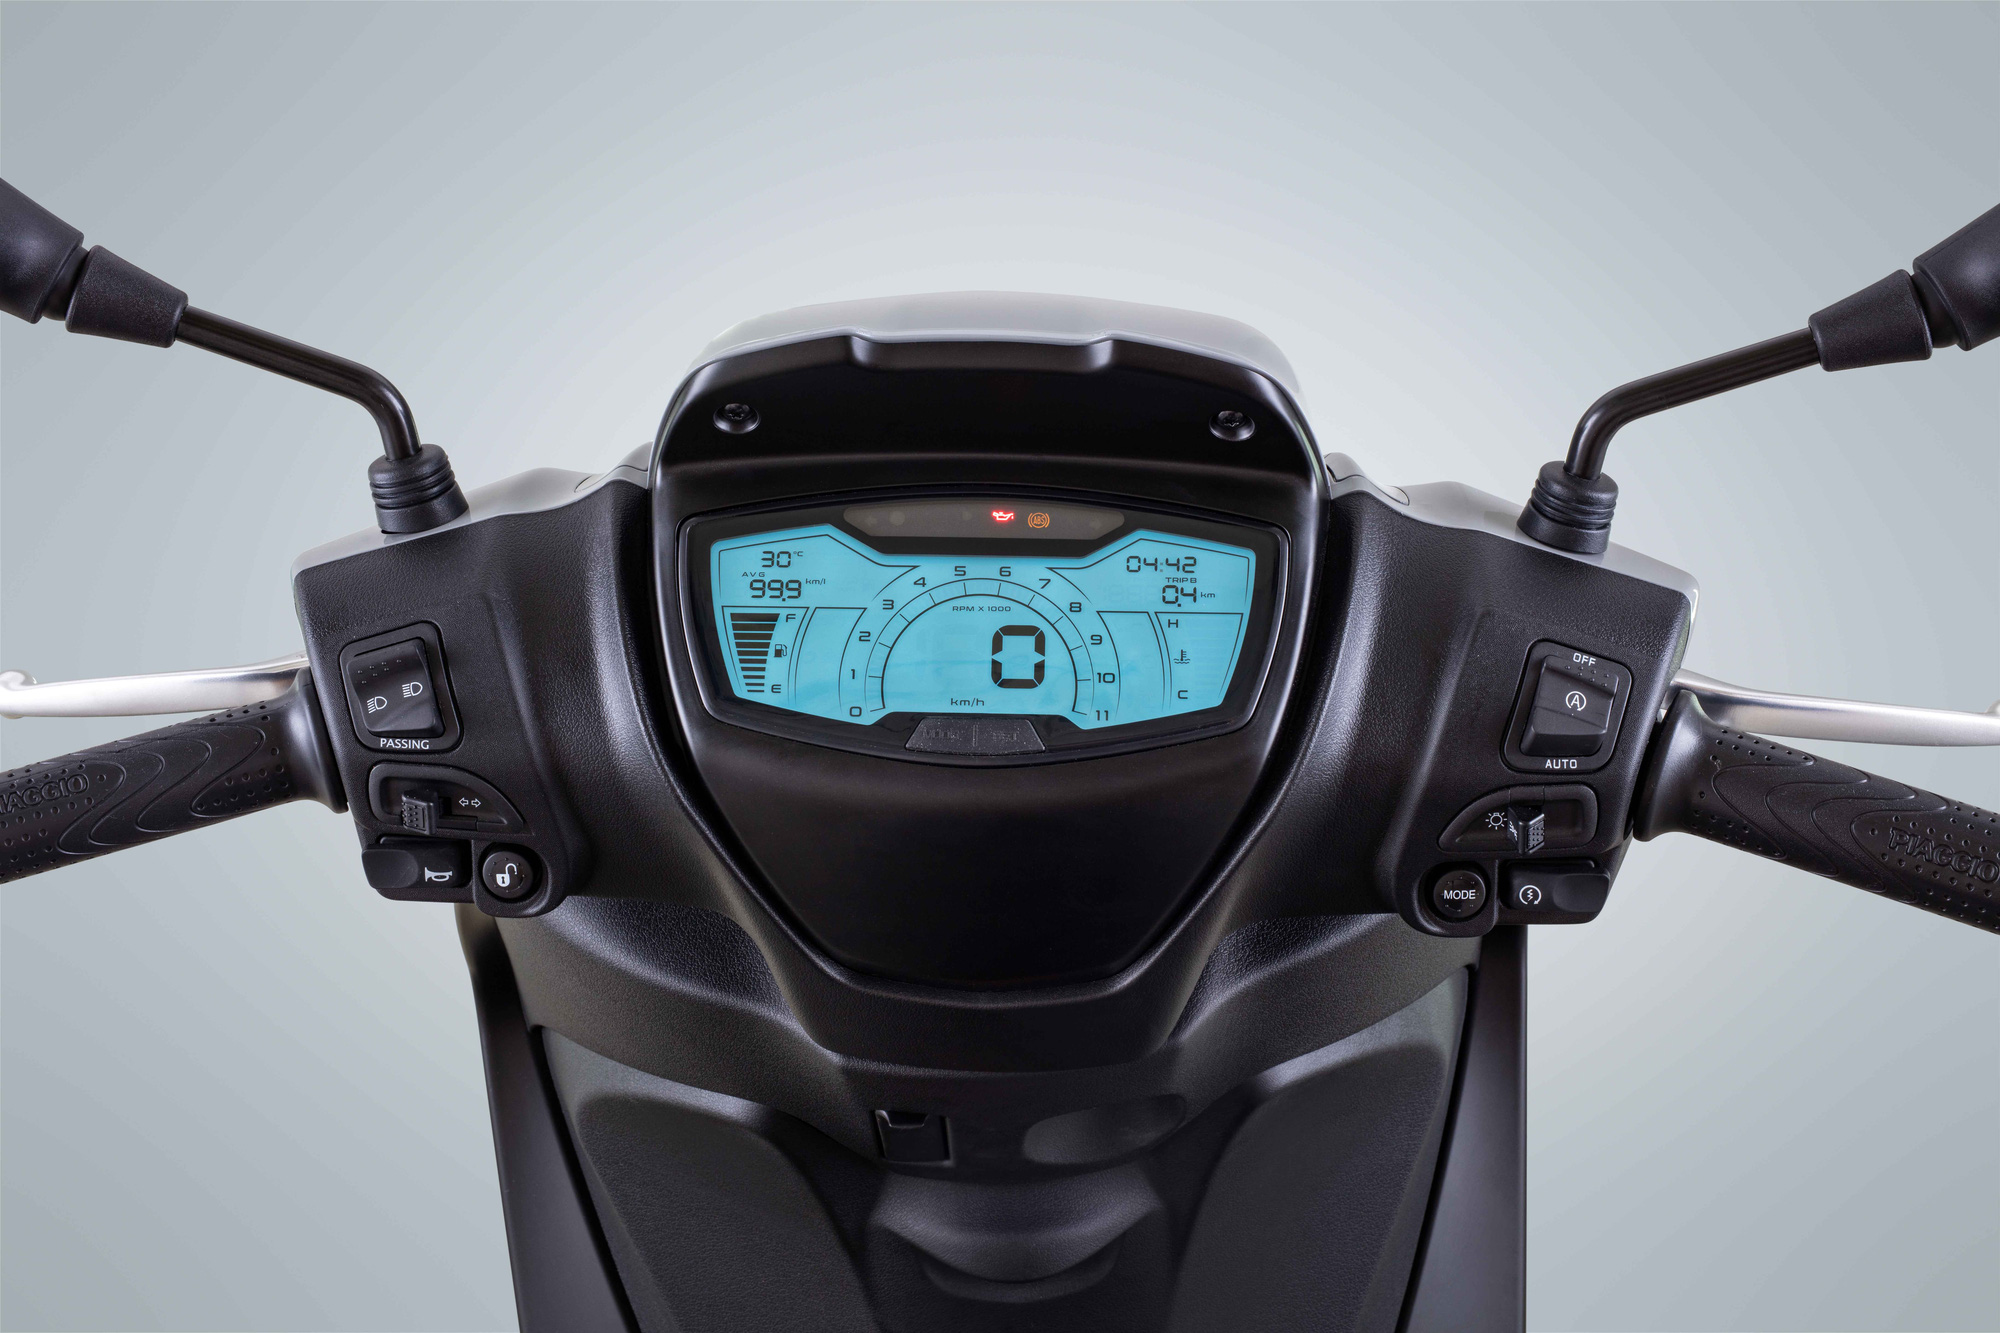 Ra mắt Piaggio Medley 2020 - Đấu Honda SH bằng giá bán từ 75 triệu đồng - Ảnh 5.